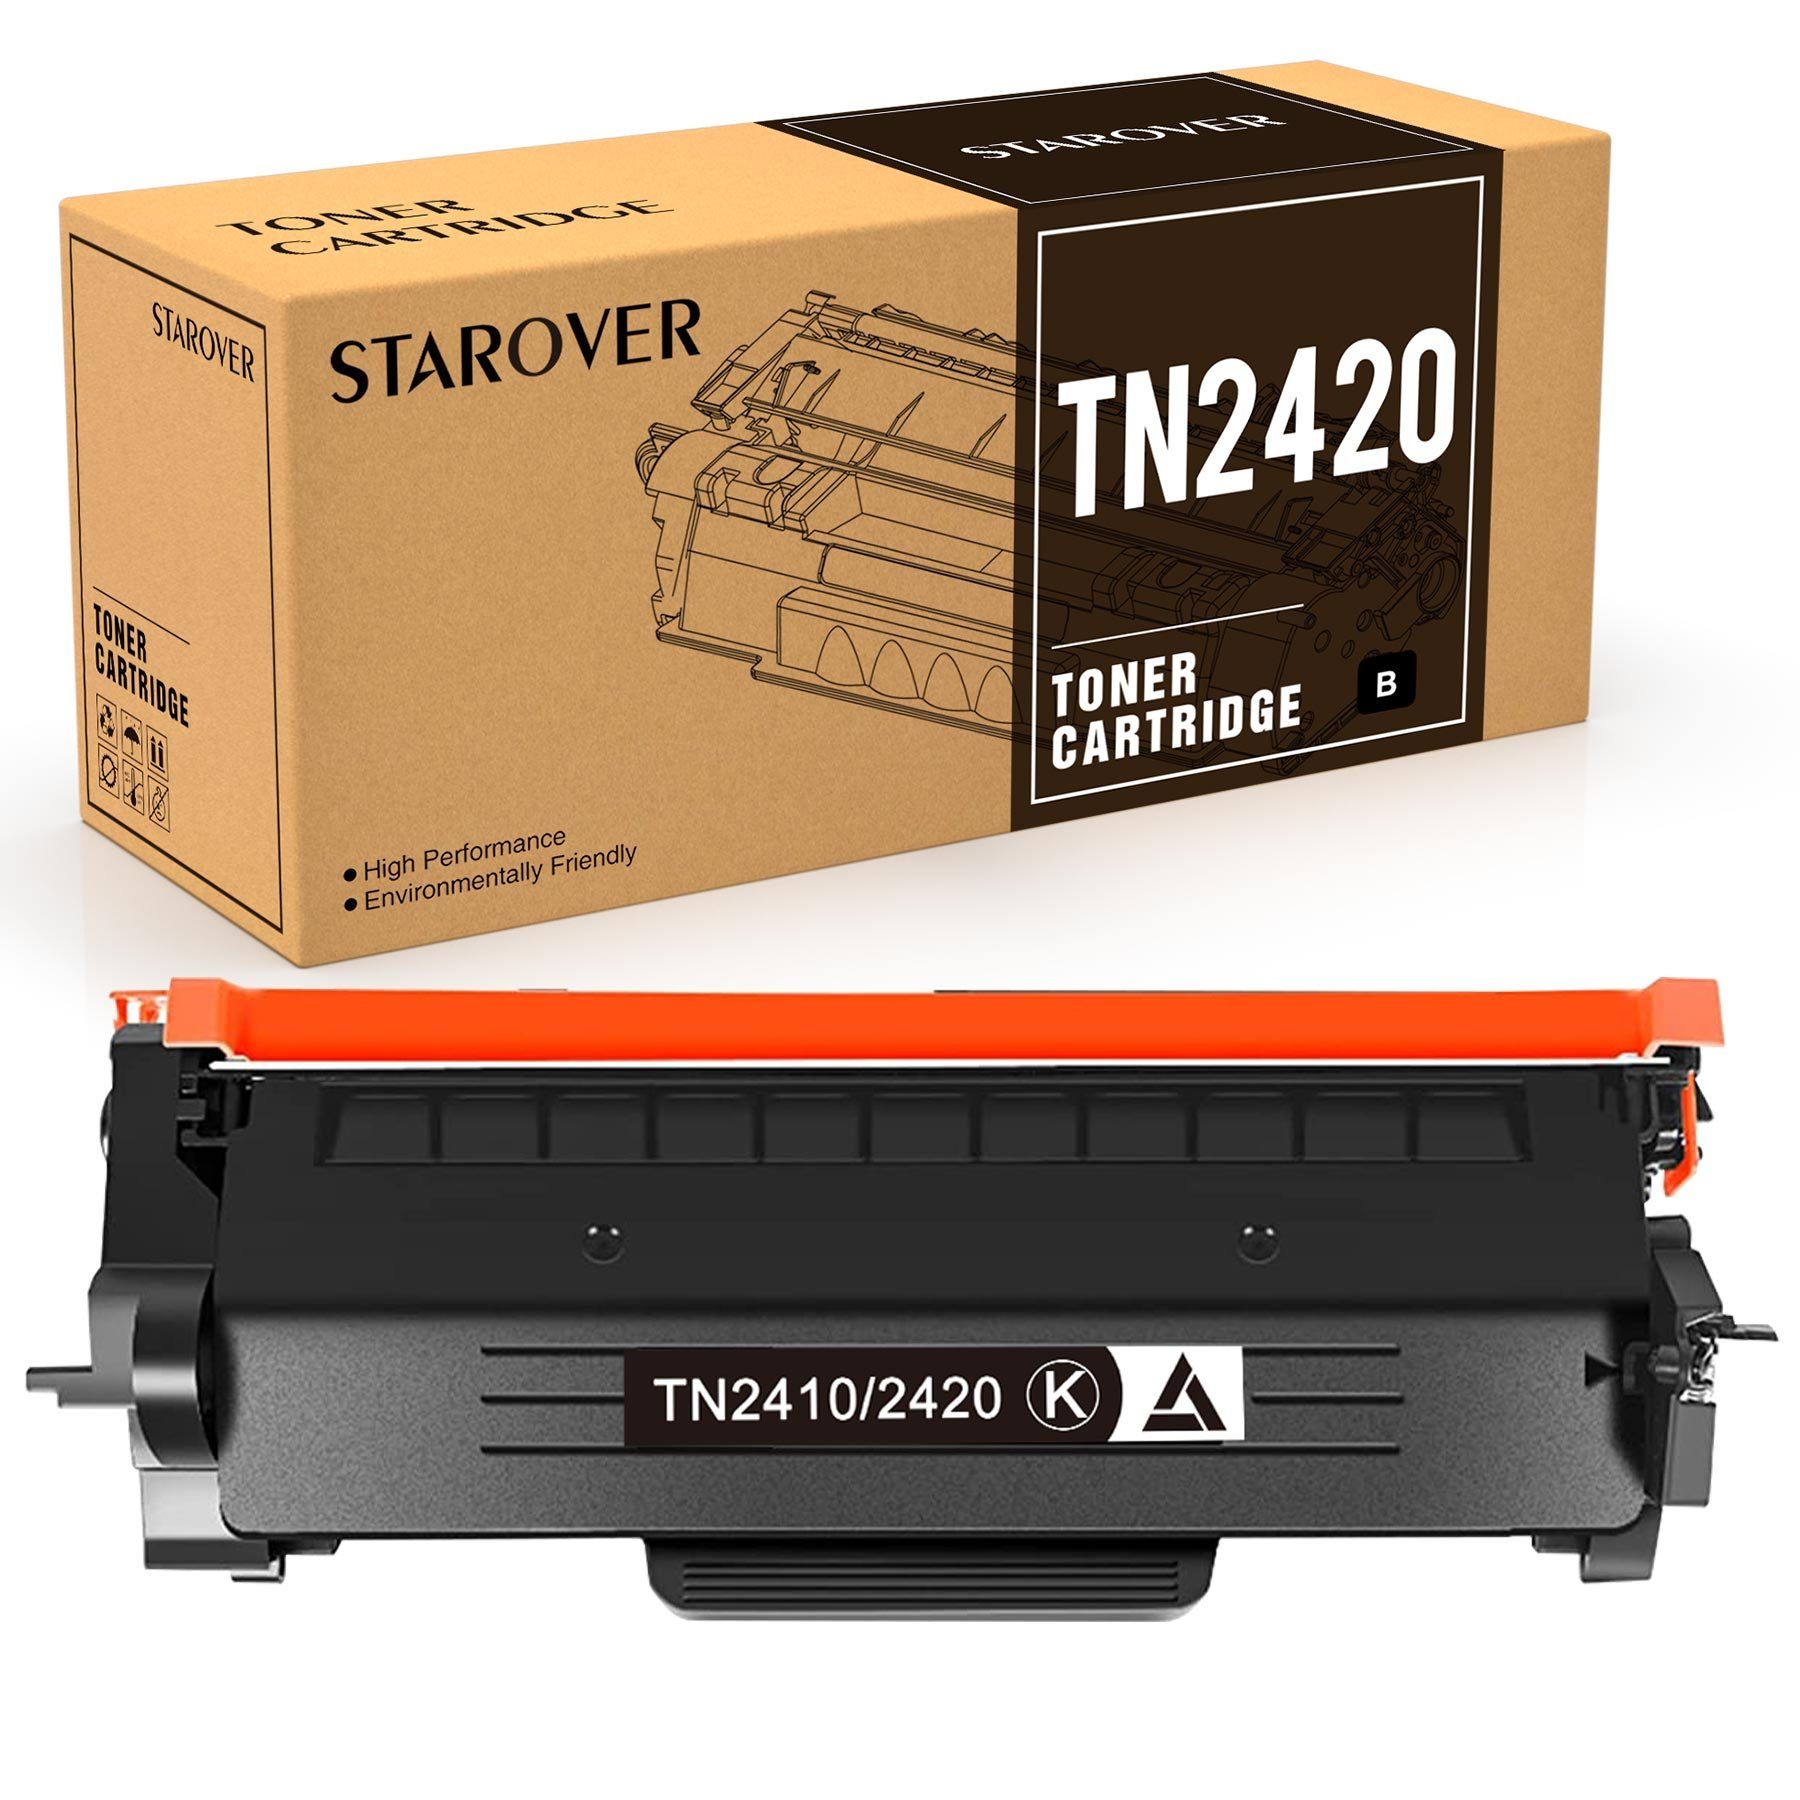 STAROVER Tonerpatrone TN 2420 TN 2410 für Brother HL-L2310D DCP-L2510D MFC-L2710DN, (MFC-L2710DW MFC-L2710DN MFC-L2750DW), HL-L2350DW HL-L2730DN DCP-L2530DW